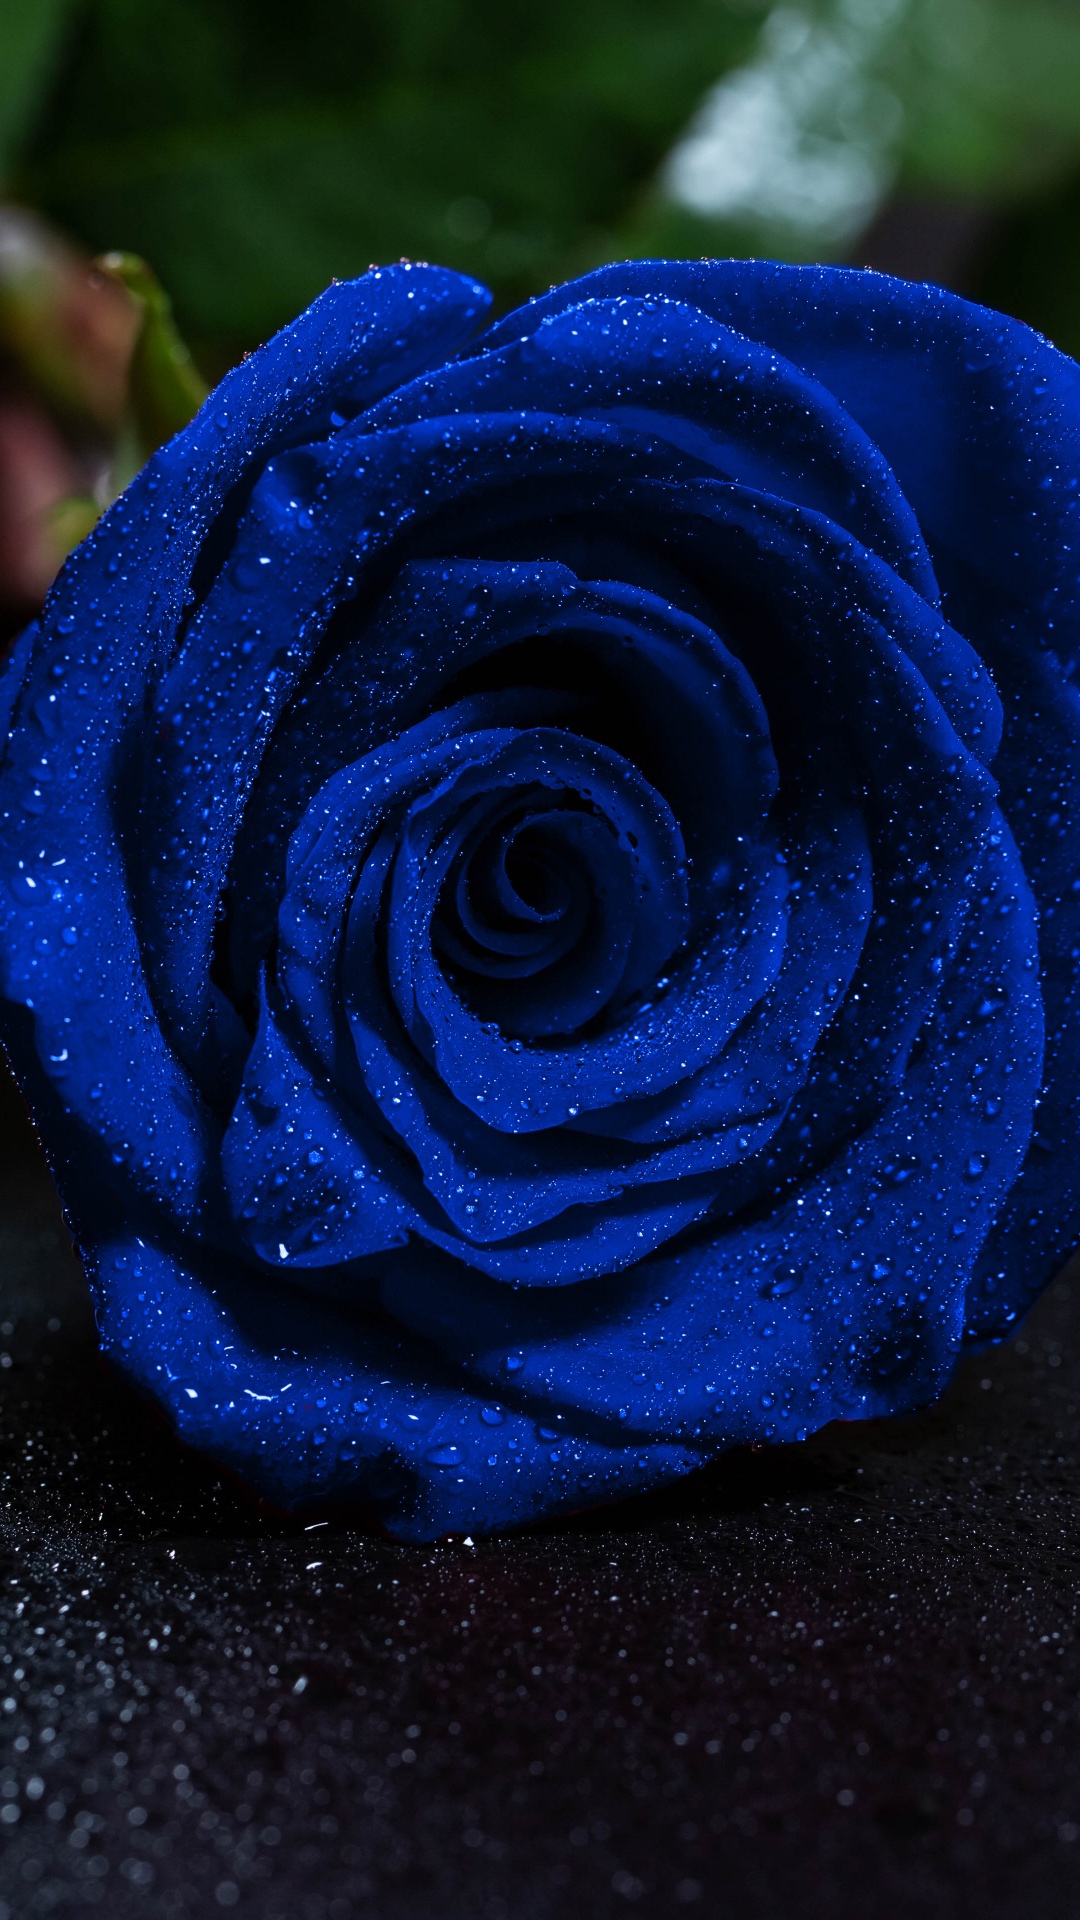 蓝玫瑰, 显花植物, 玫瑰花园, 钴蓝色的, 玫瑰家庭 壁纸 1080x1920 允许